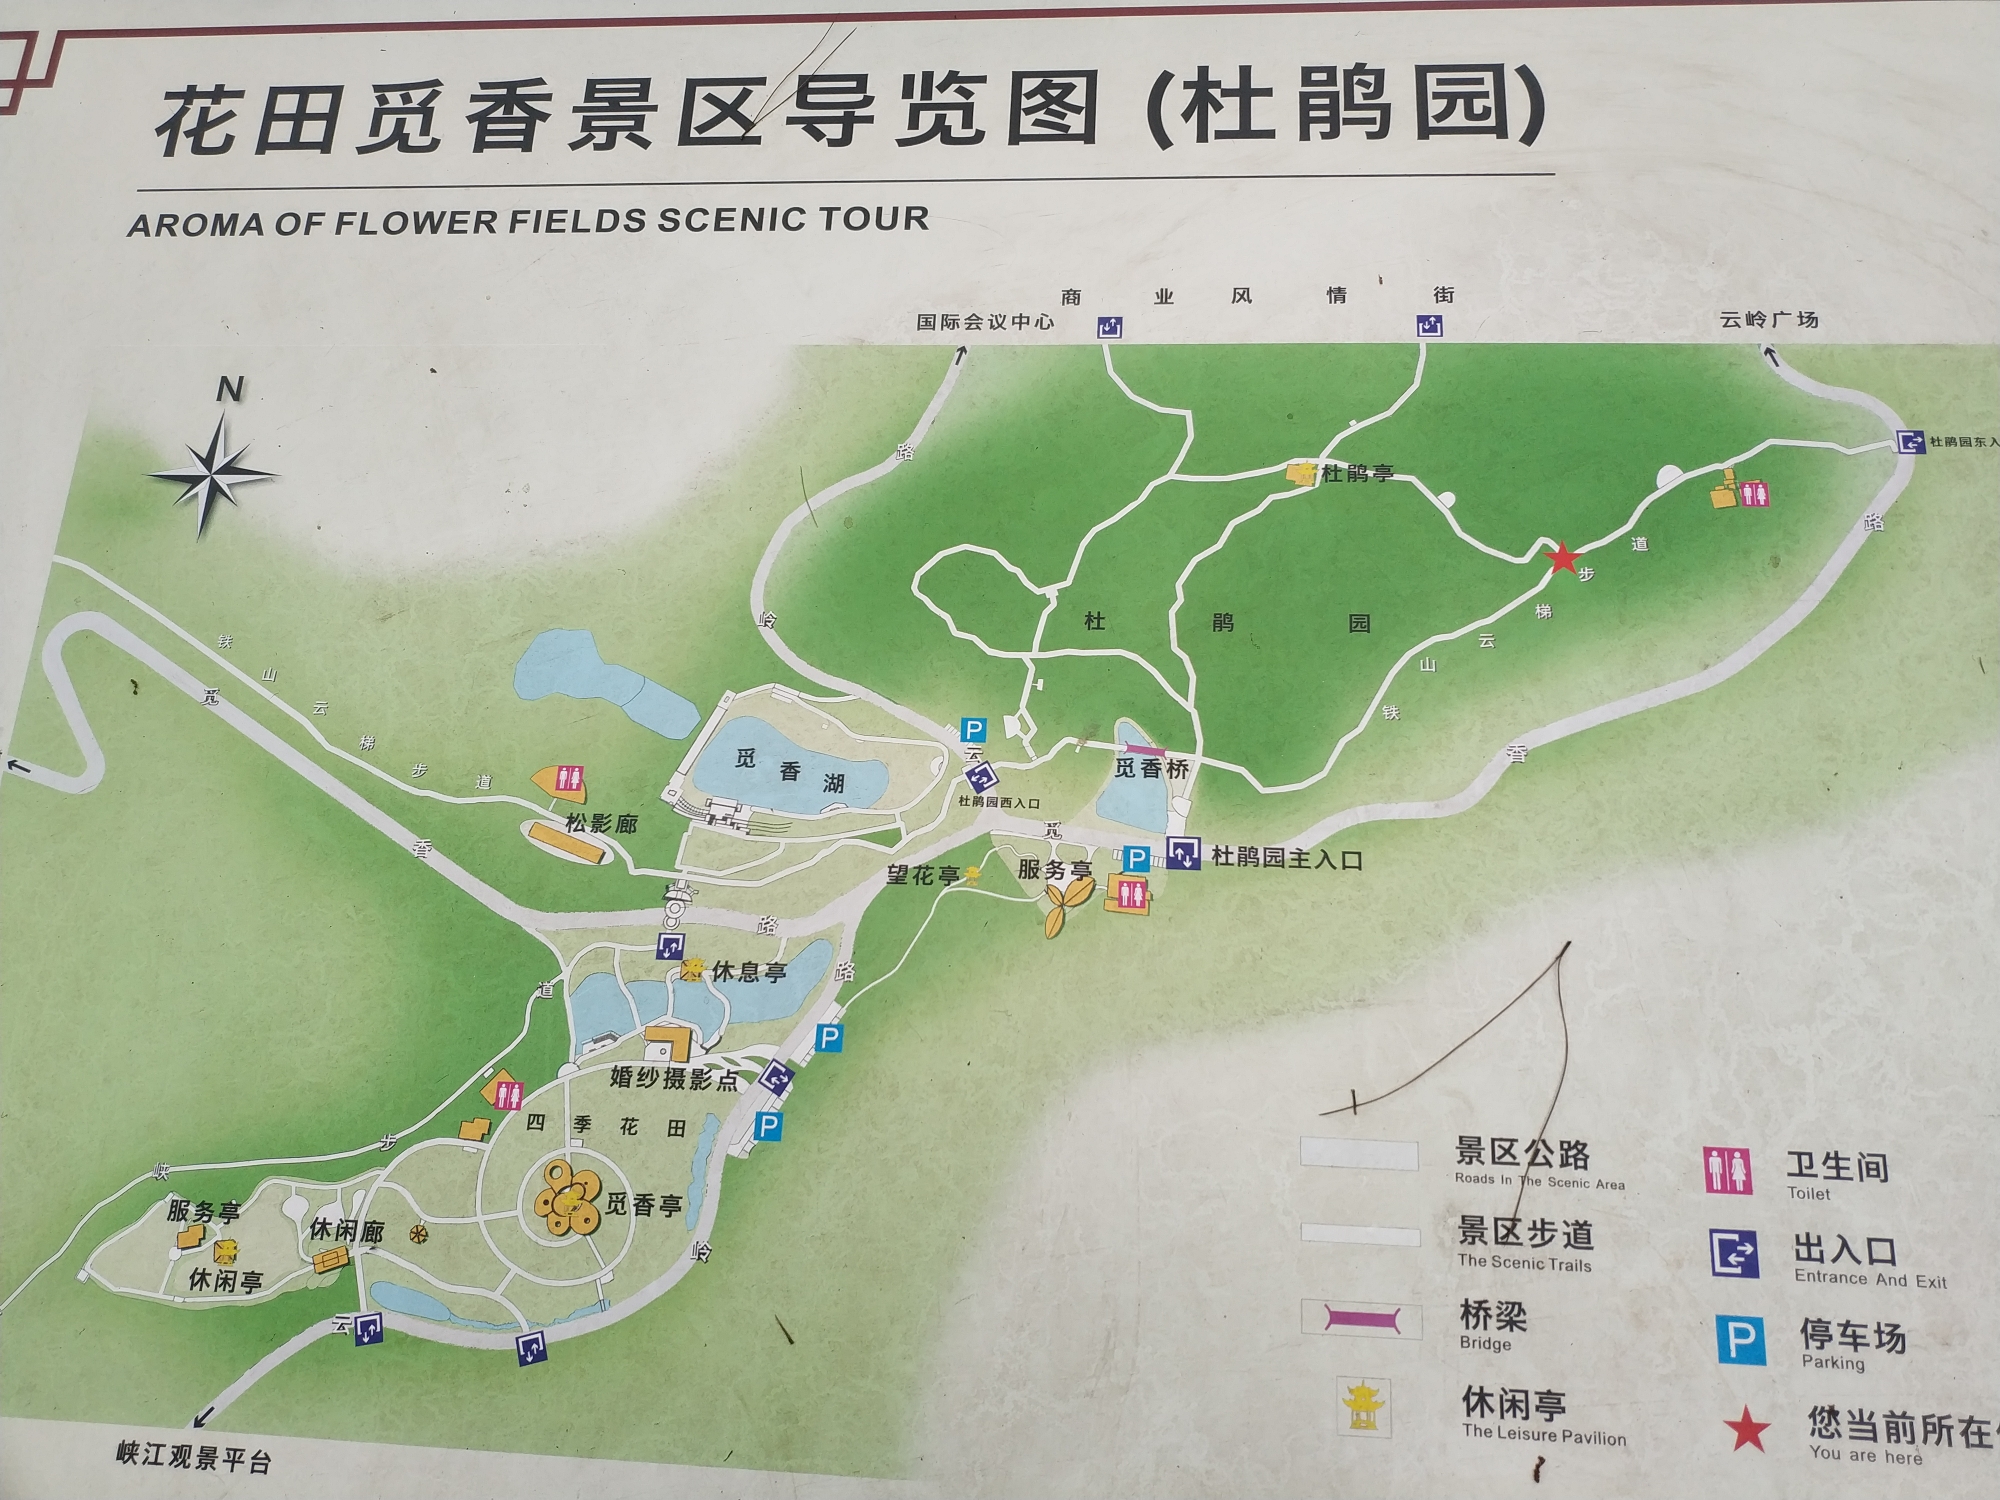 铁山坪森林公园 登山记,重庆自助游攻略 - 马蜂窝